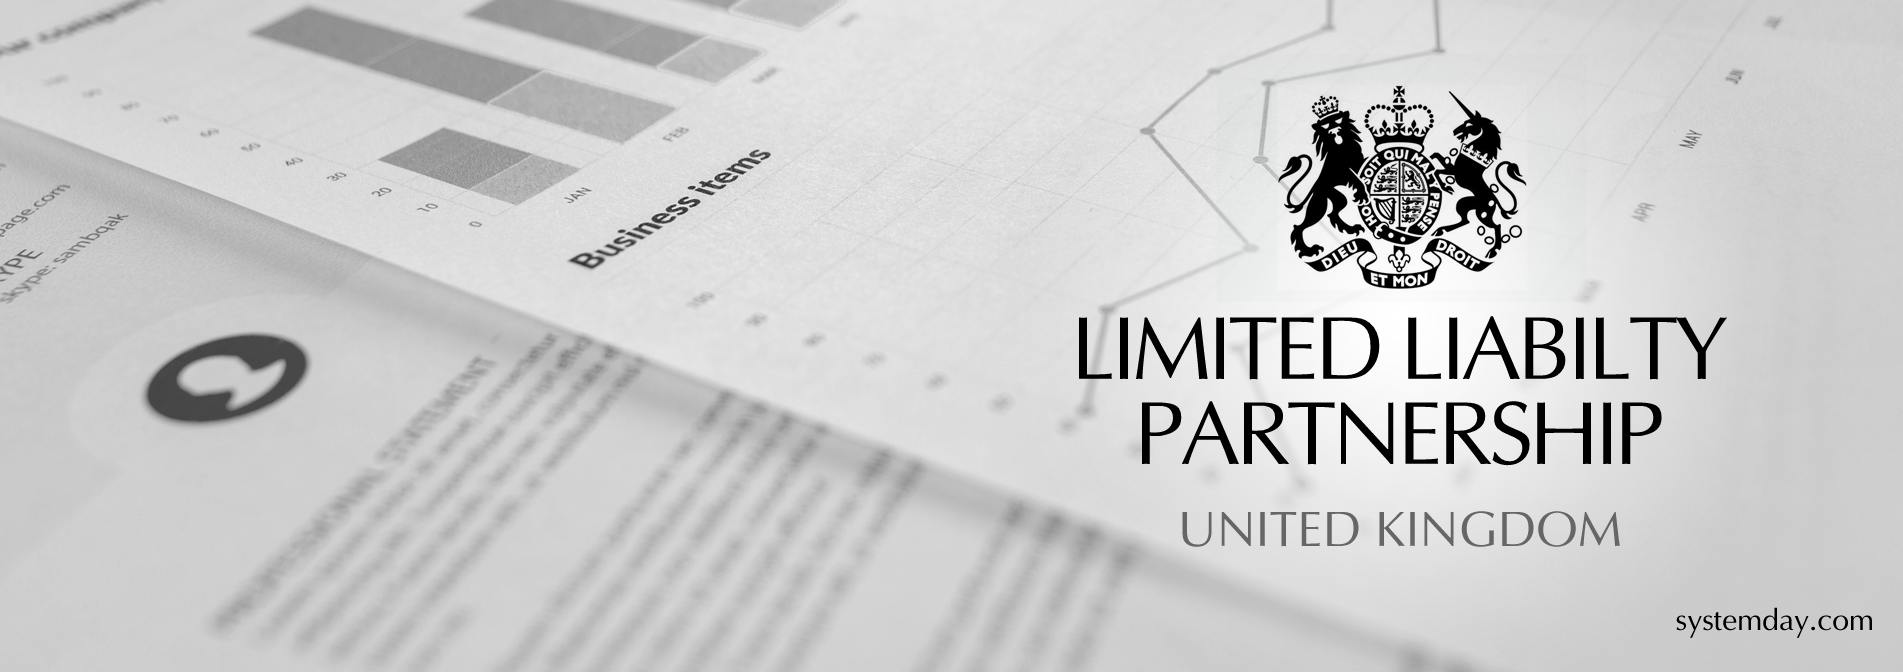 UK Limited Liability partnership